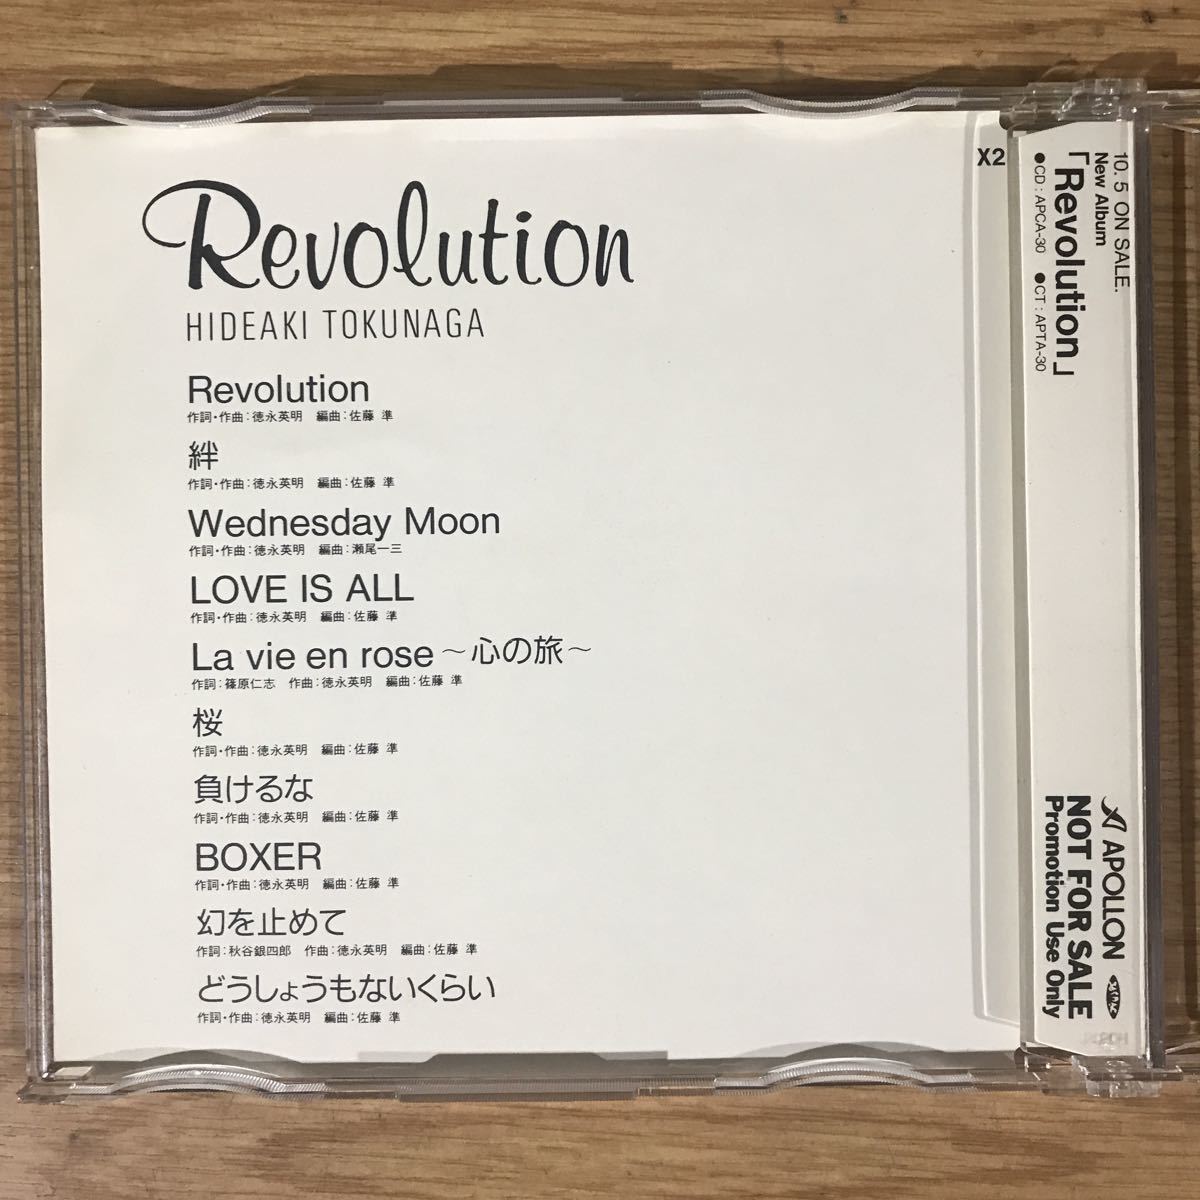 265-1 中古CD800円 徳永英明 Revolution 非売品_画像2